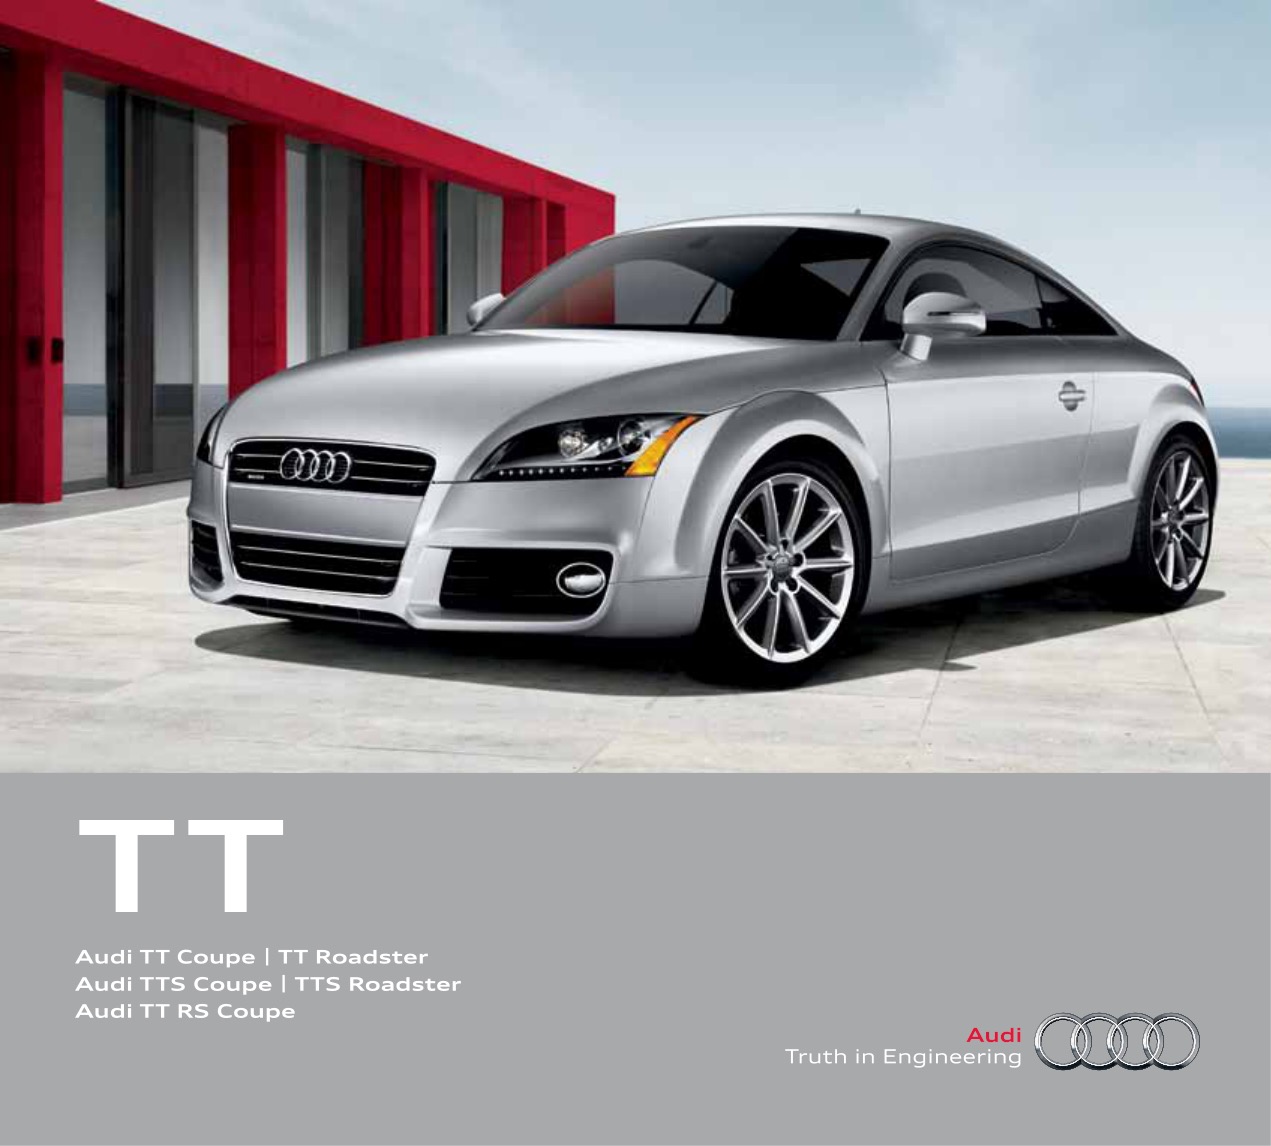 2012 Audi TT Brochure